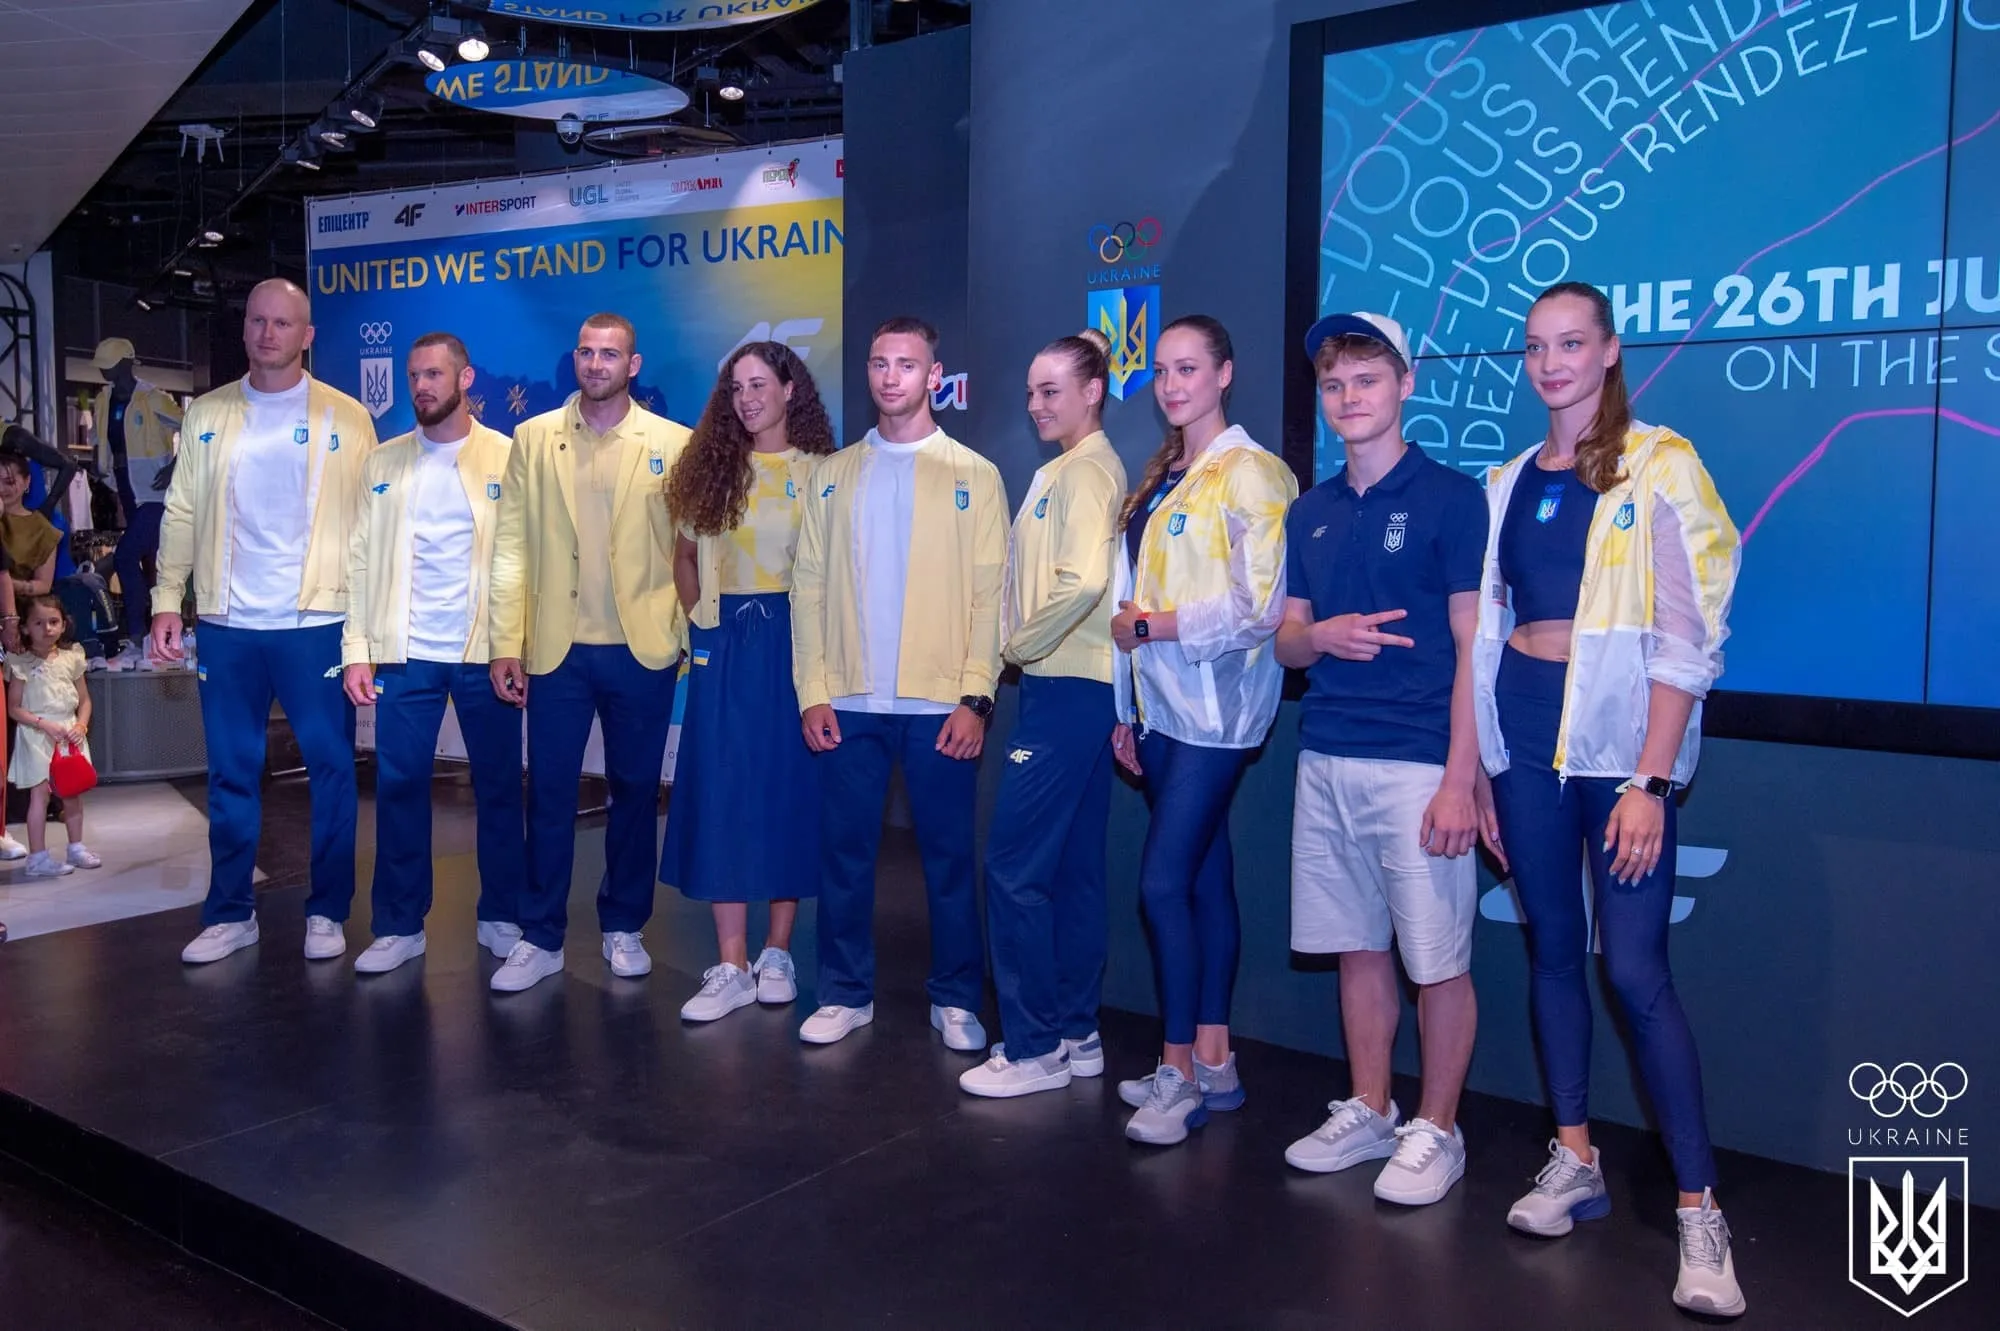 Брейк-данс, футбол и более 20 видов спорта. Как Олимпиада-2024 может стать самой результативной для Украины